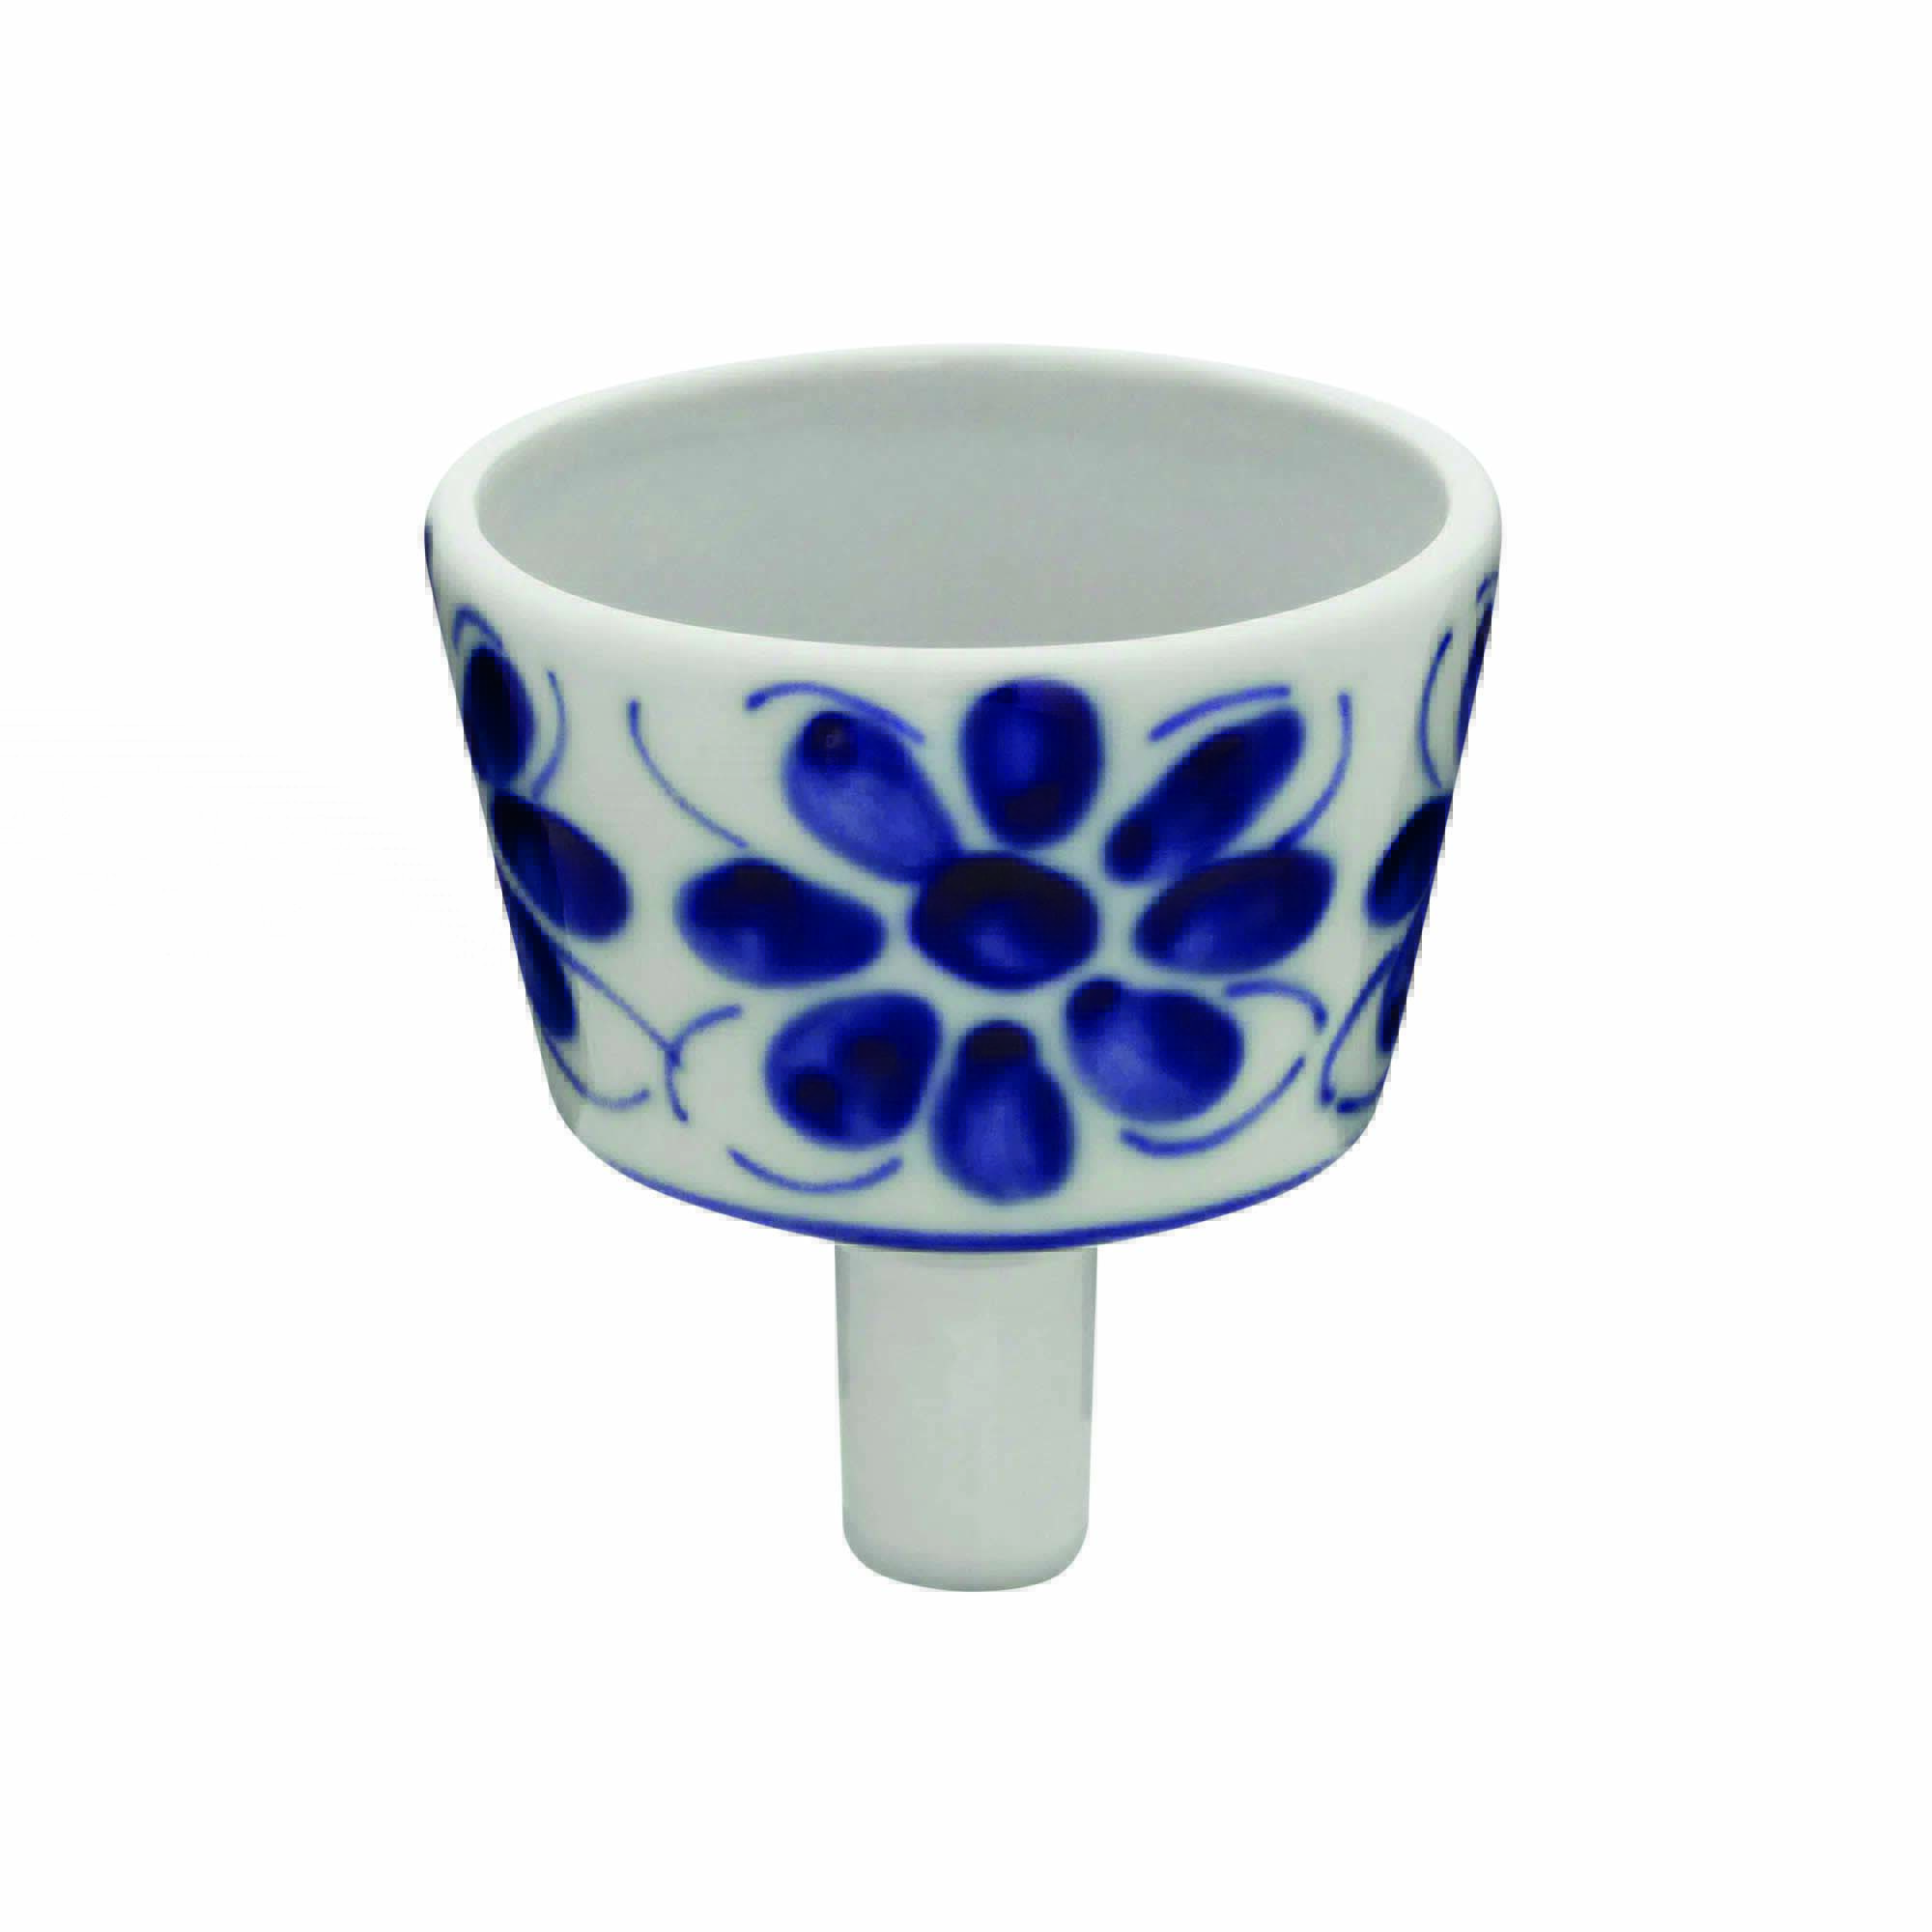 Coador de porcelana branco com pinturas de flores azuis